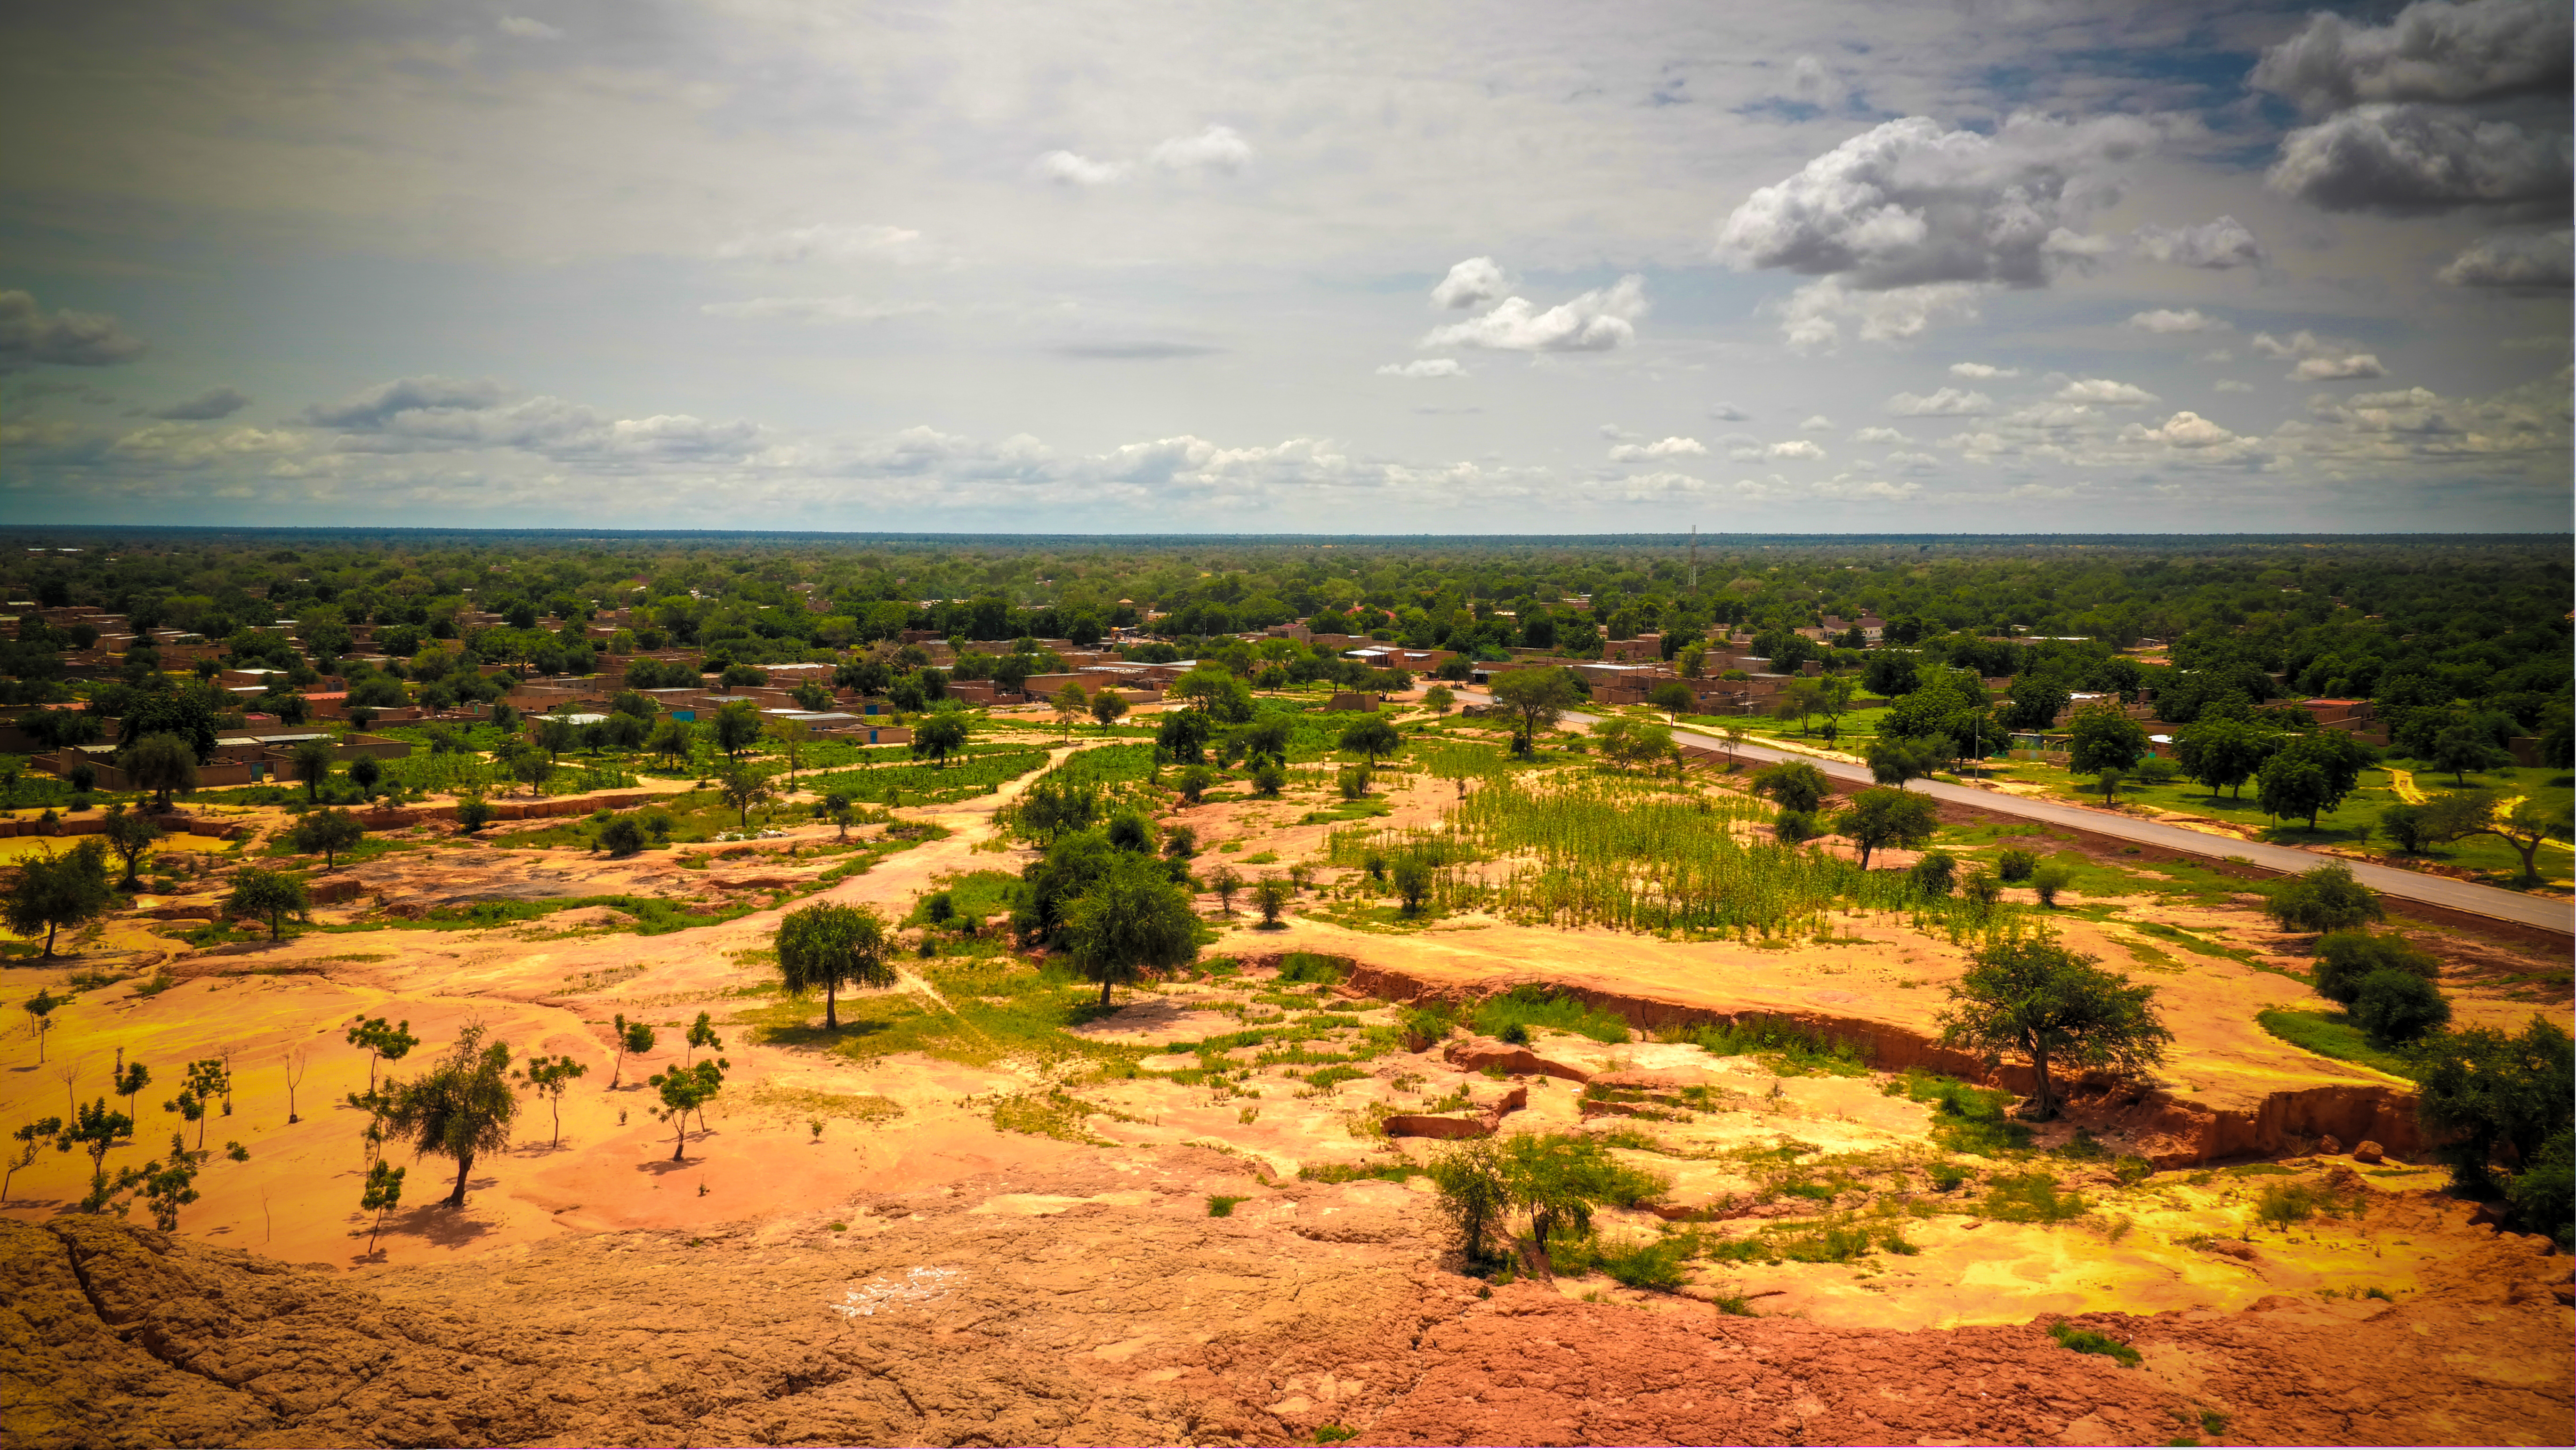 Le Sahel désigne la bande longeant l'Afrique d'ouest en est, qui délimite la partie désertique au nord et les savanes au sud. © homocosmicos, Adobe Stock